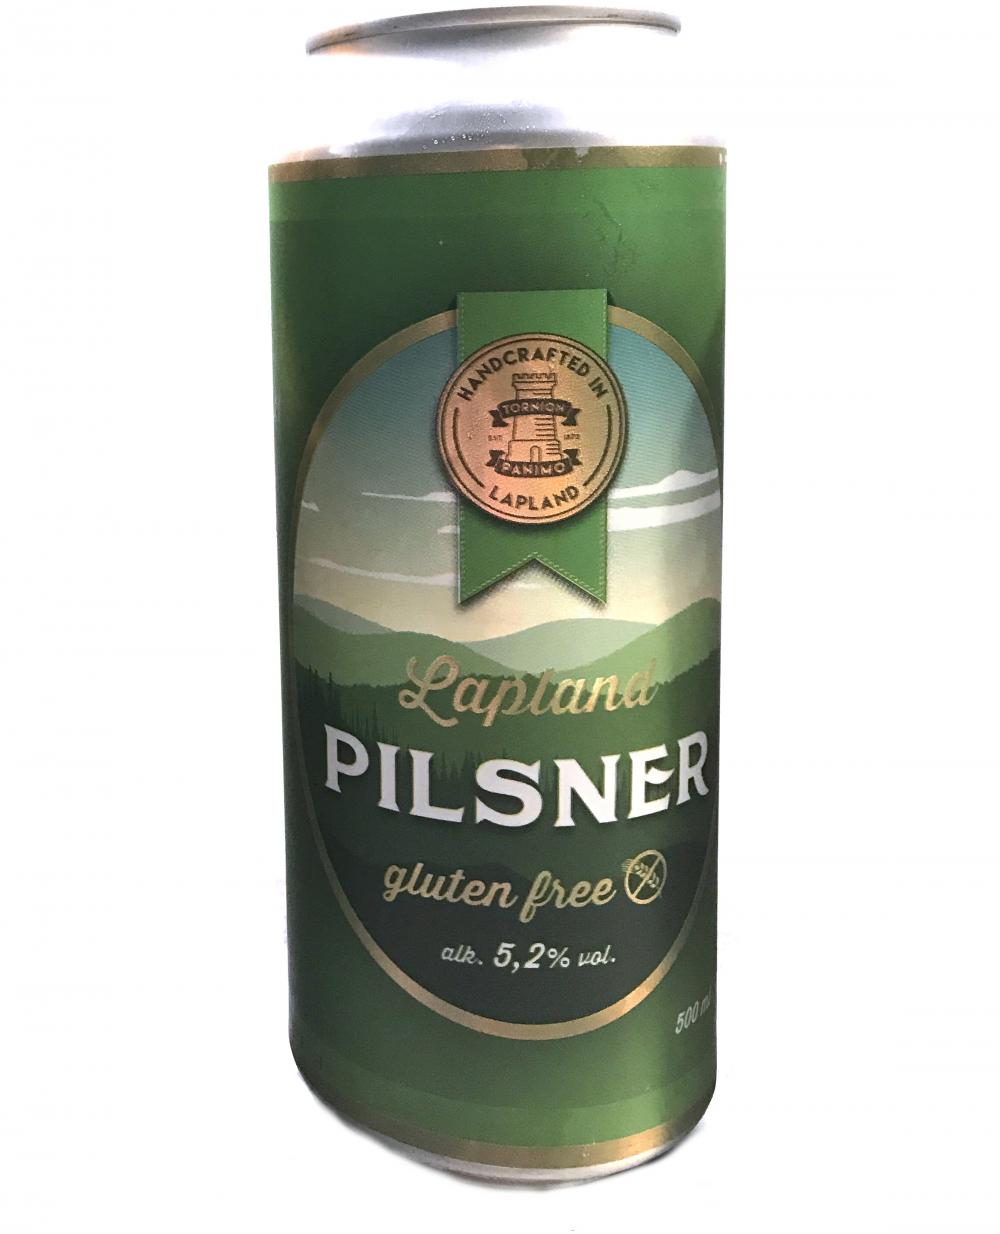 Tornion Panimo Lapland Pilsner 5.2%